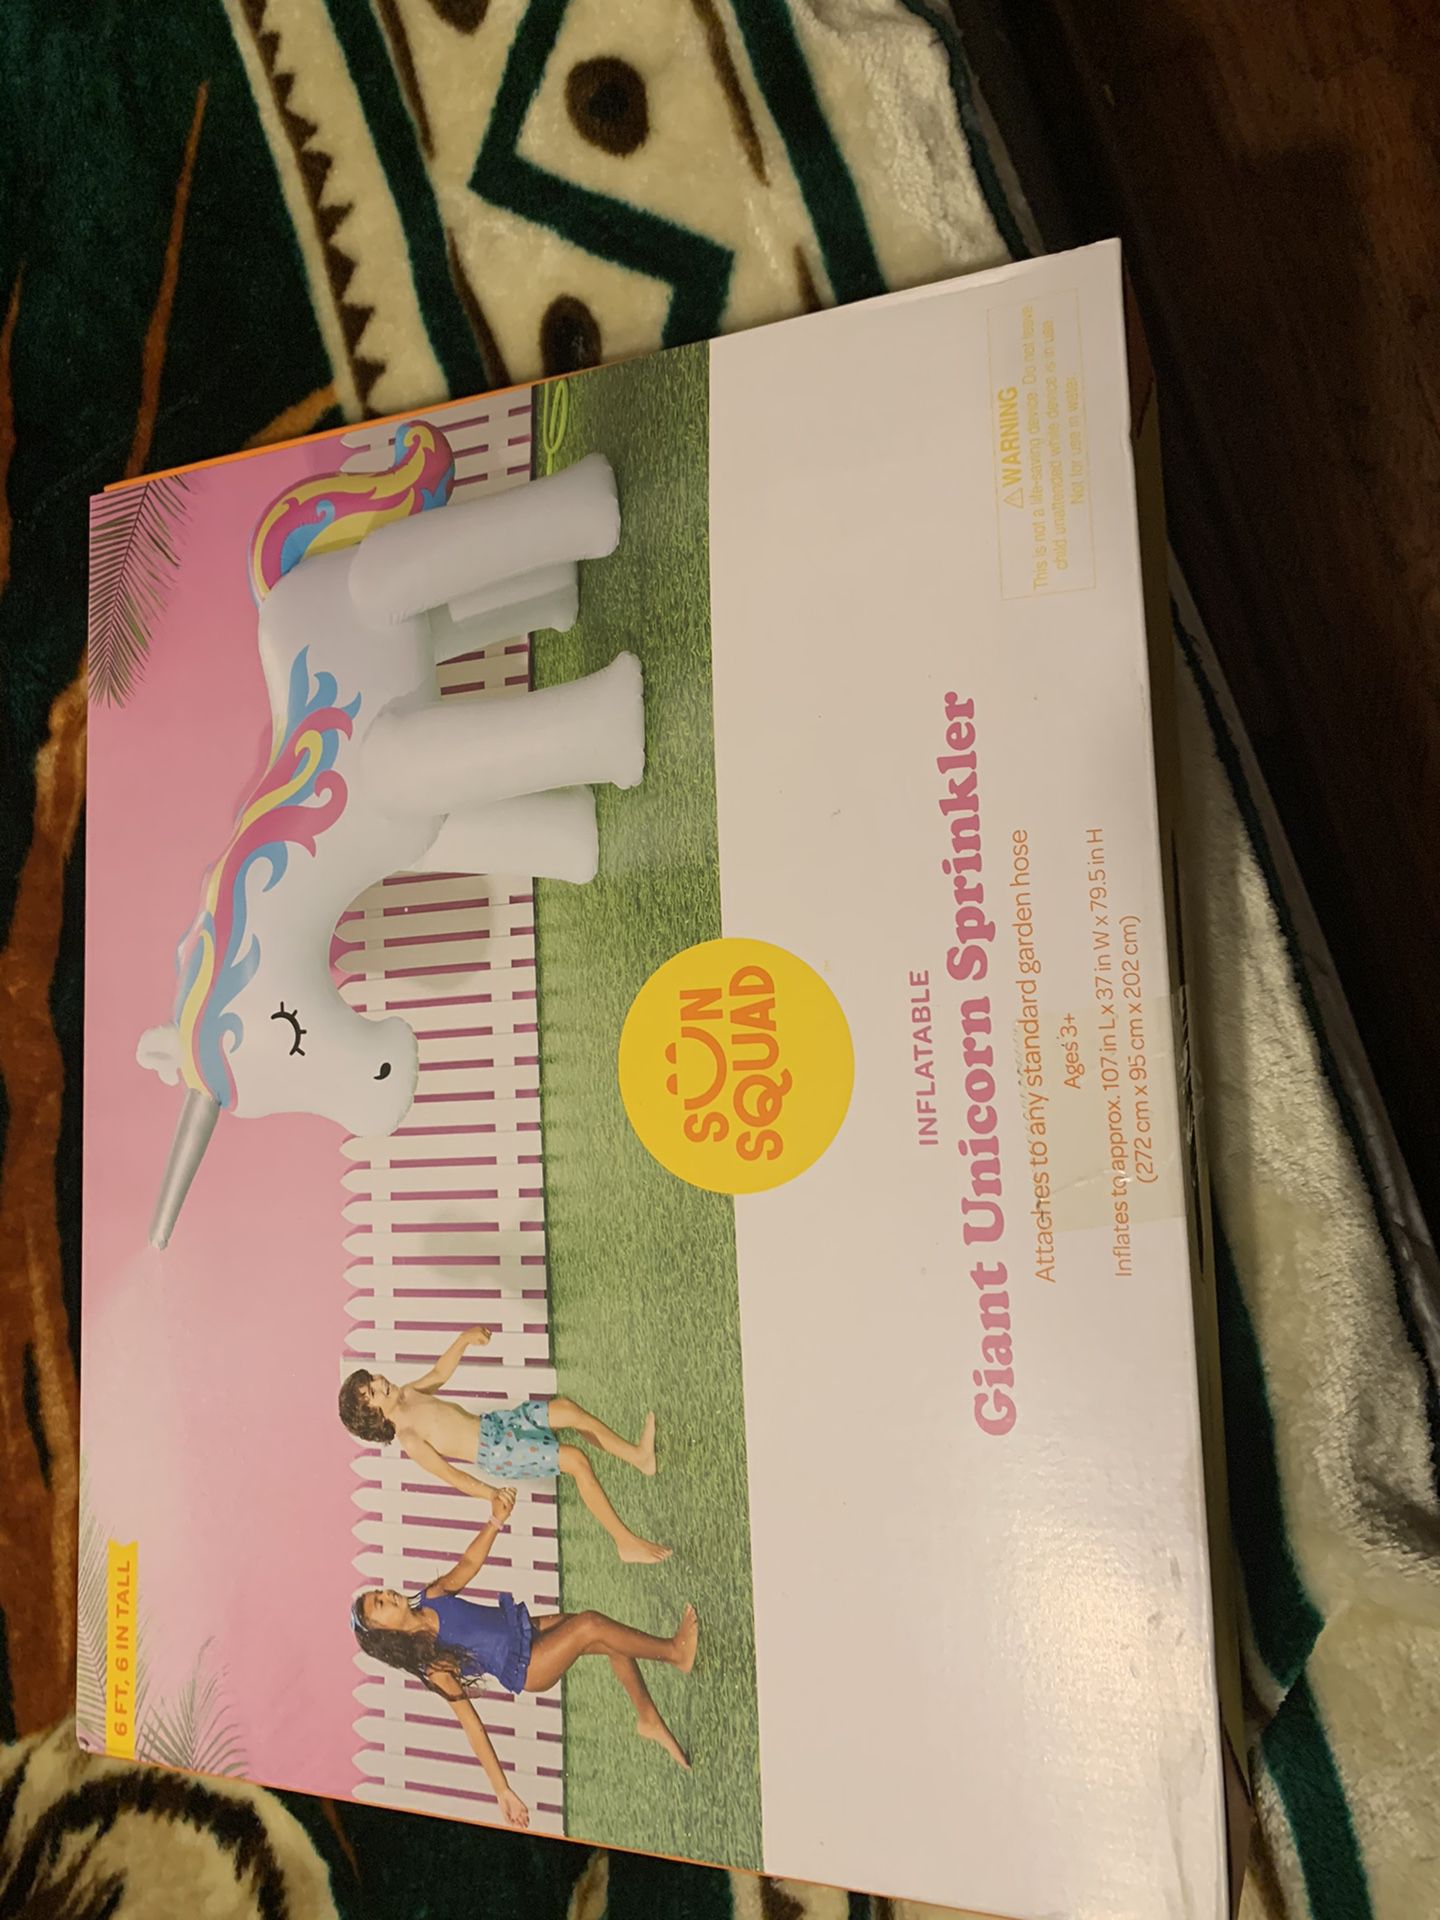 New giant unicorn sprinkler